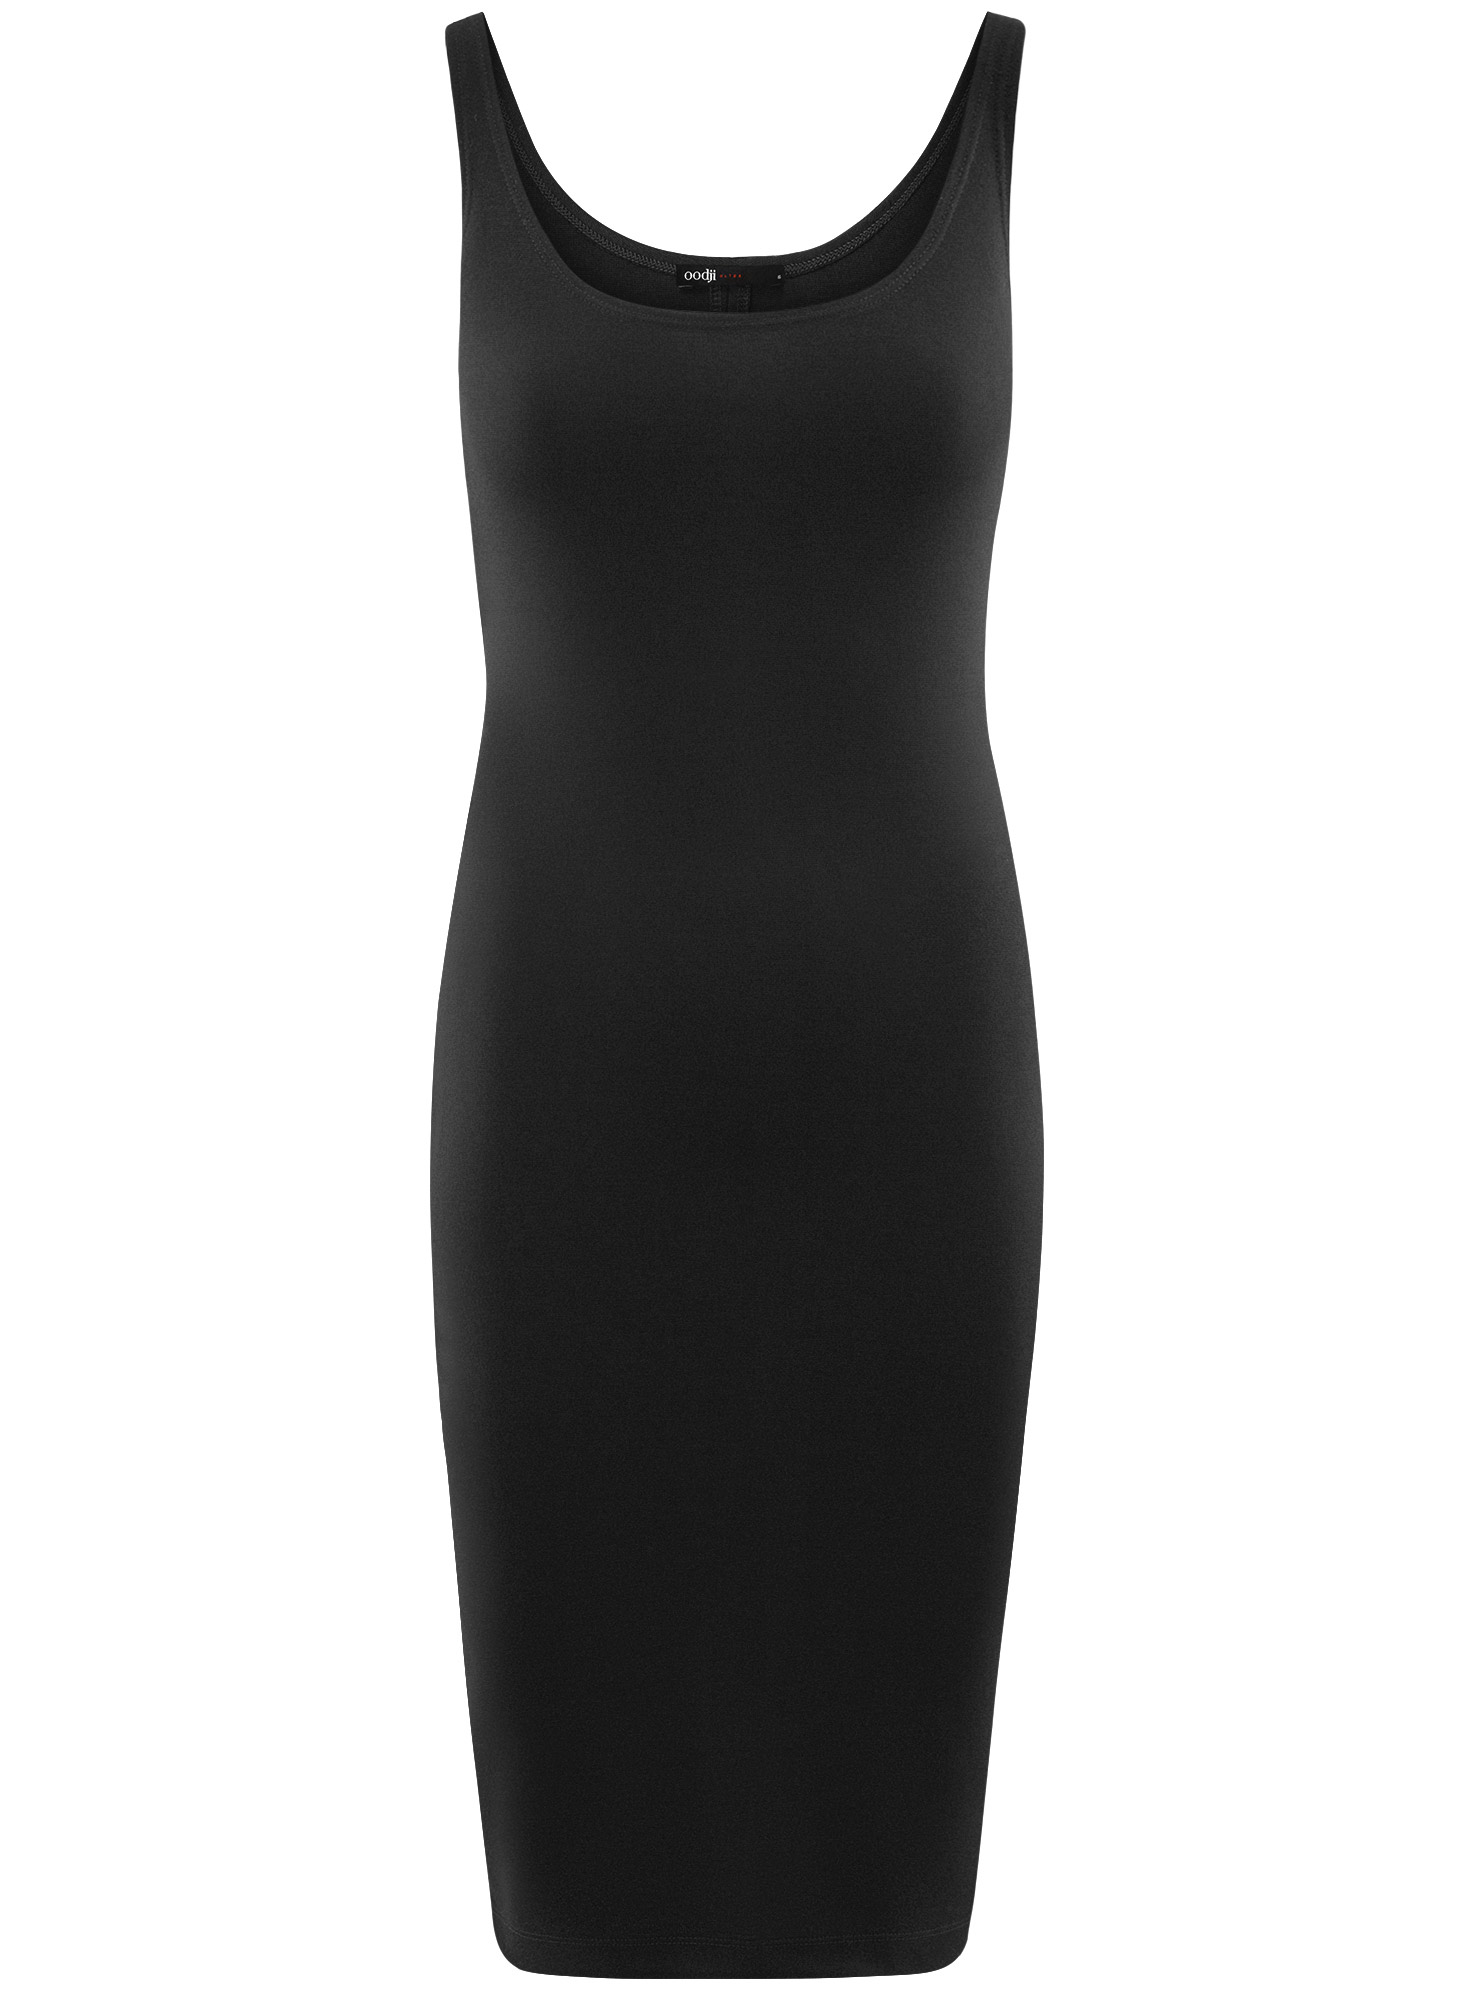 Платье женское oodji 14015007-8B черное 2XS